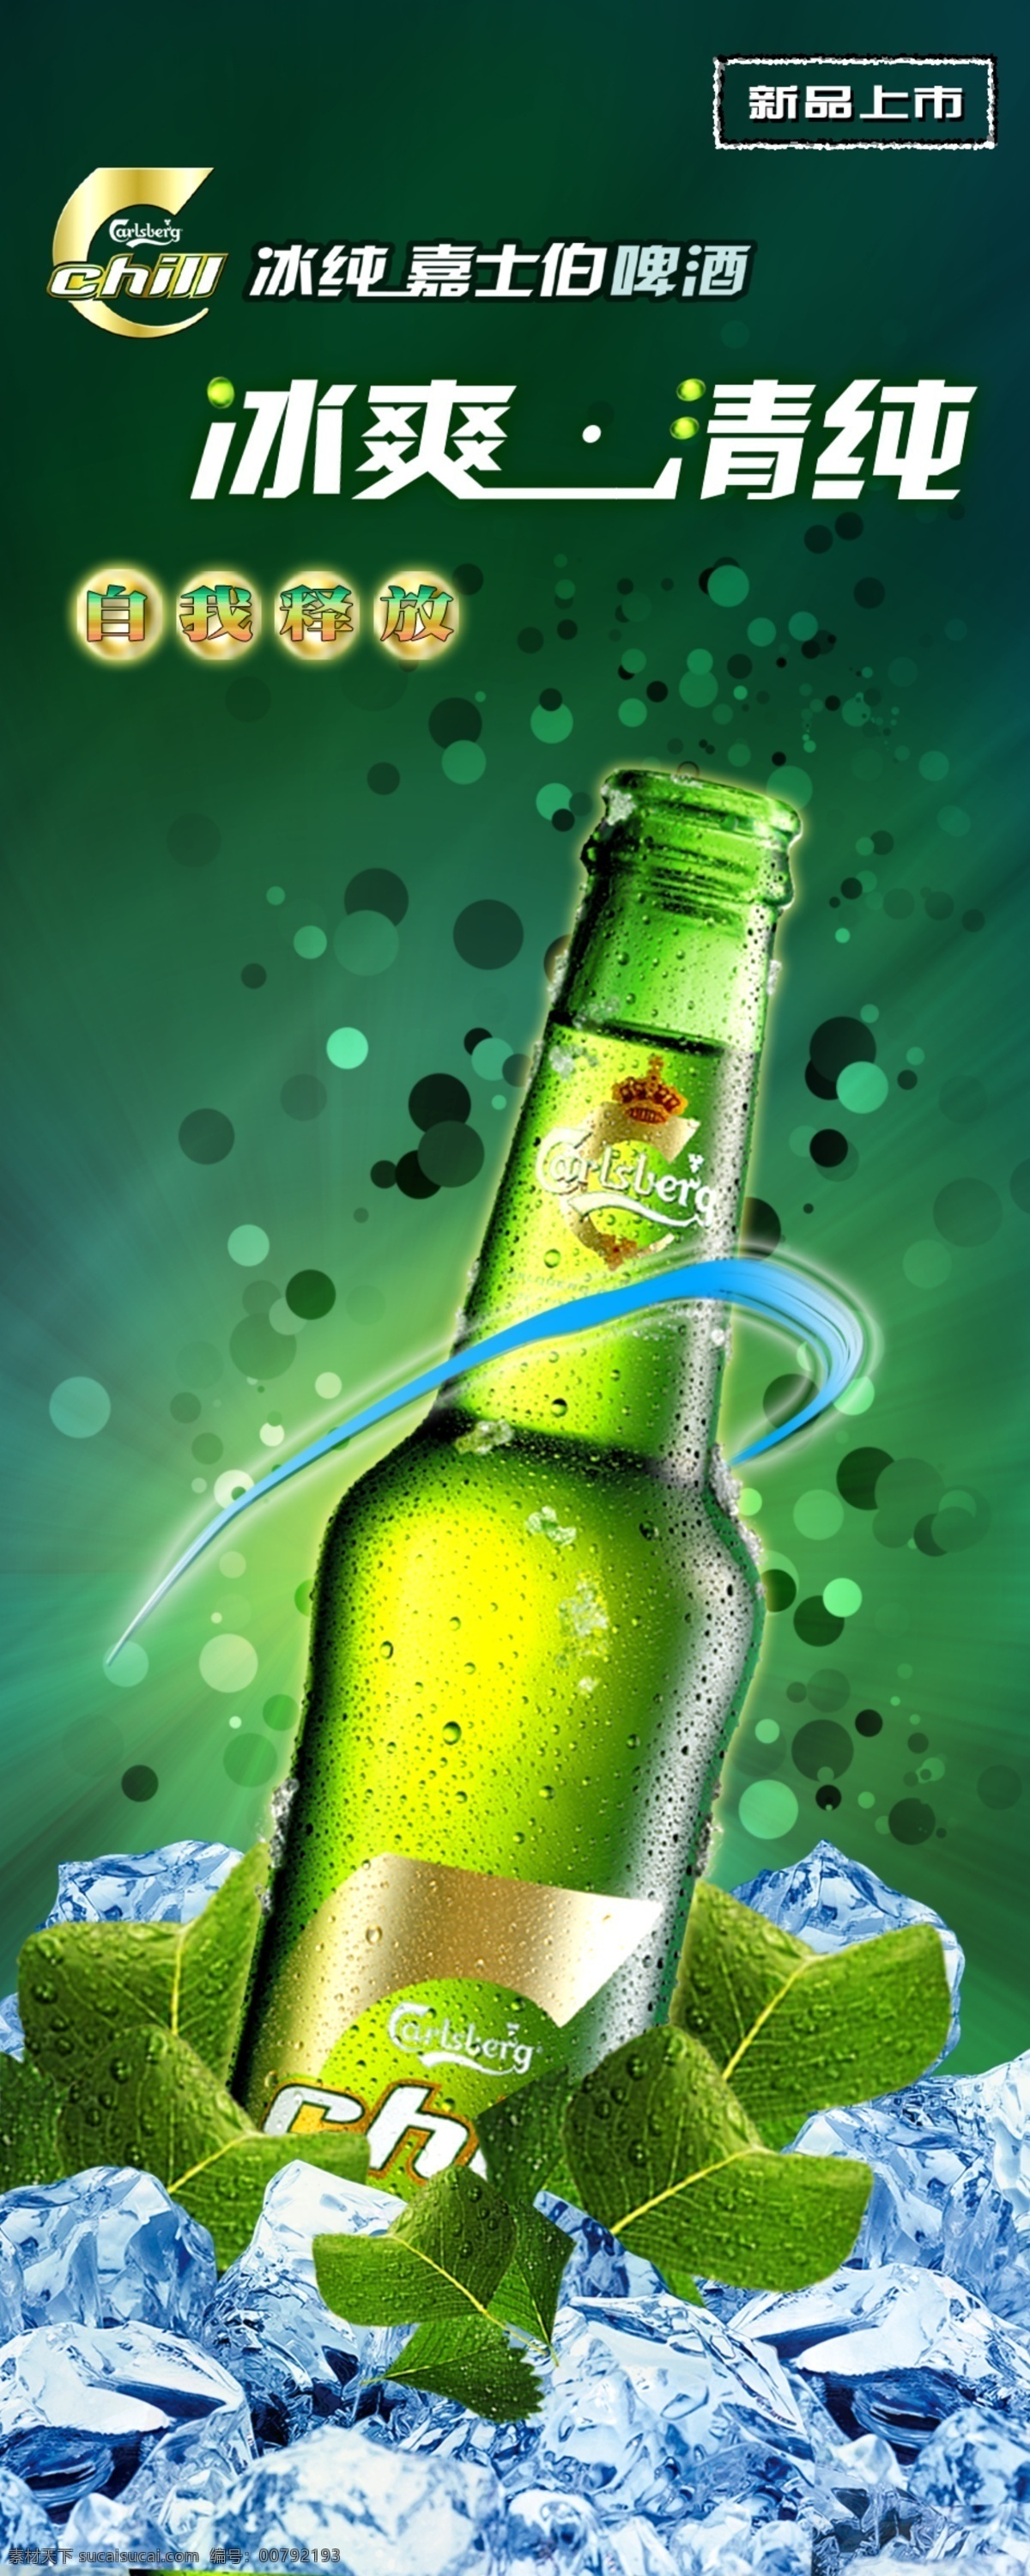 啤酒广告 啤酒 广告 绿色 冰冻 冰 酒 广告图 x 长图 p s d